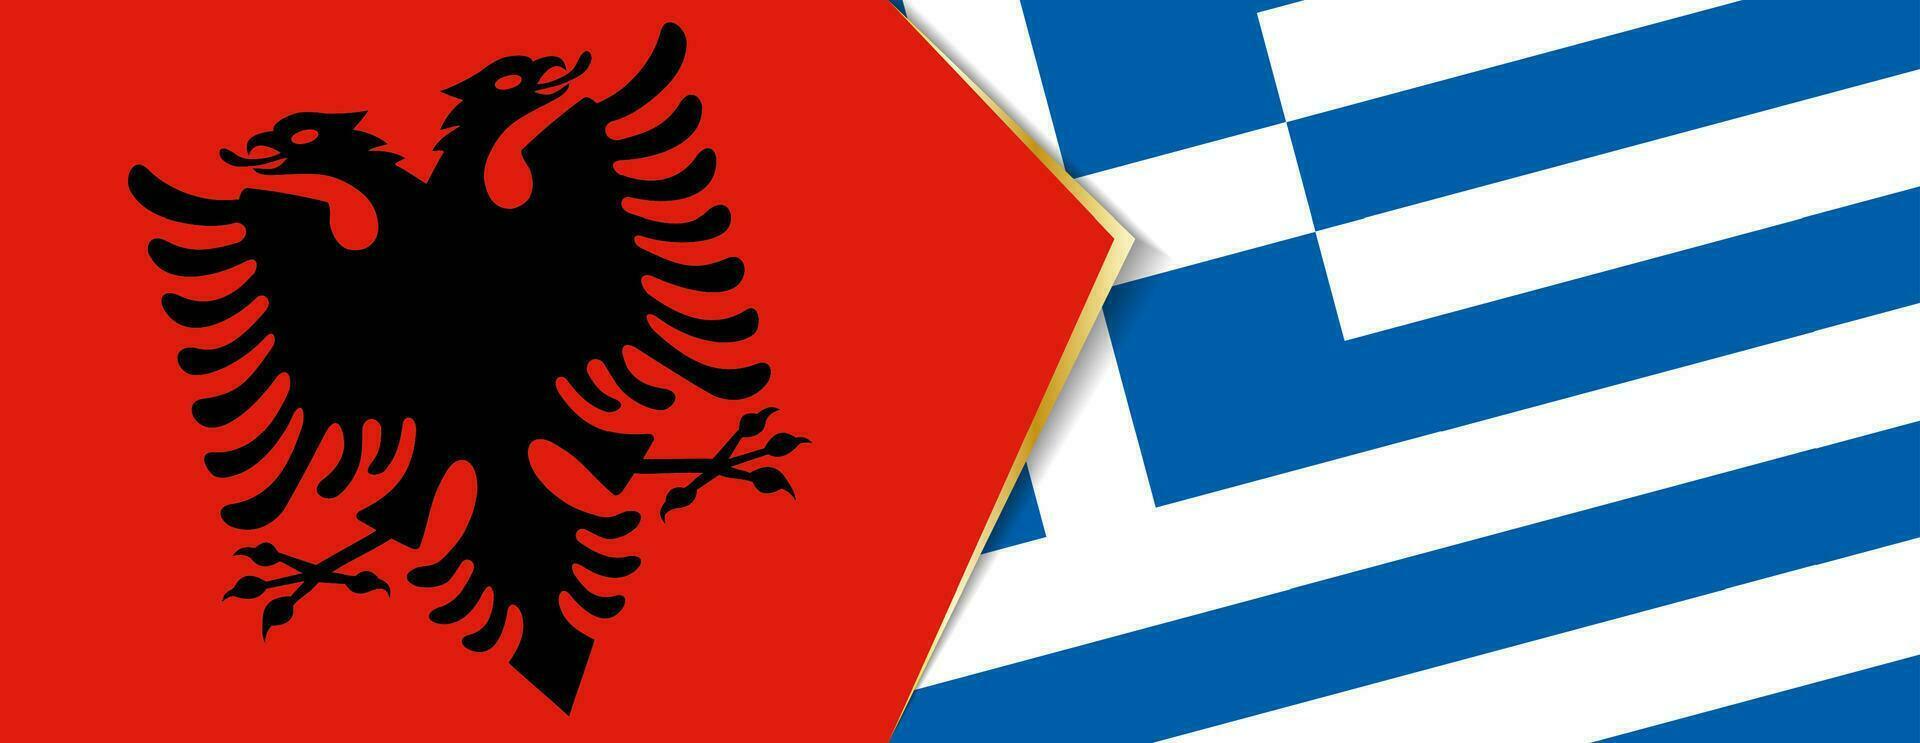 Albania y Grecia banderas, dos vector banderas